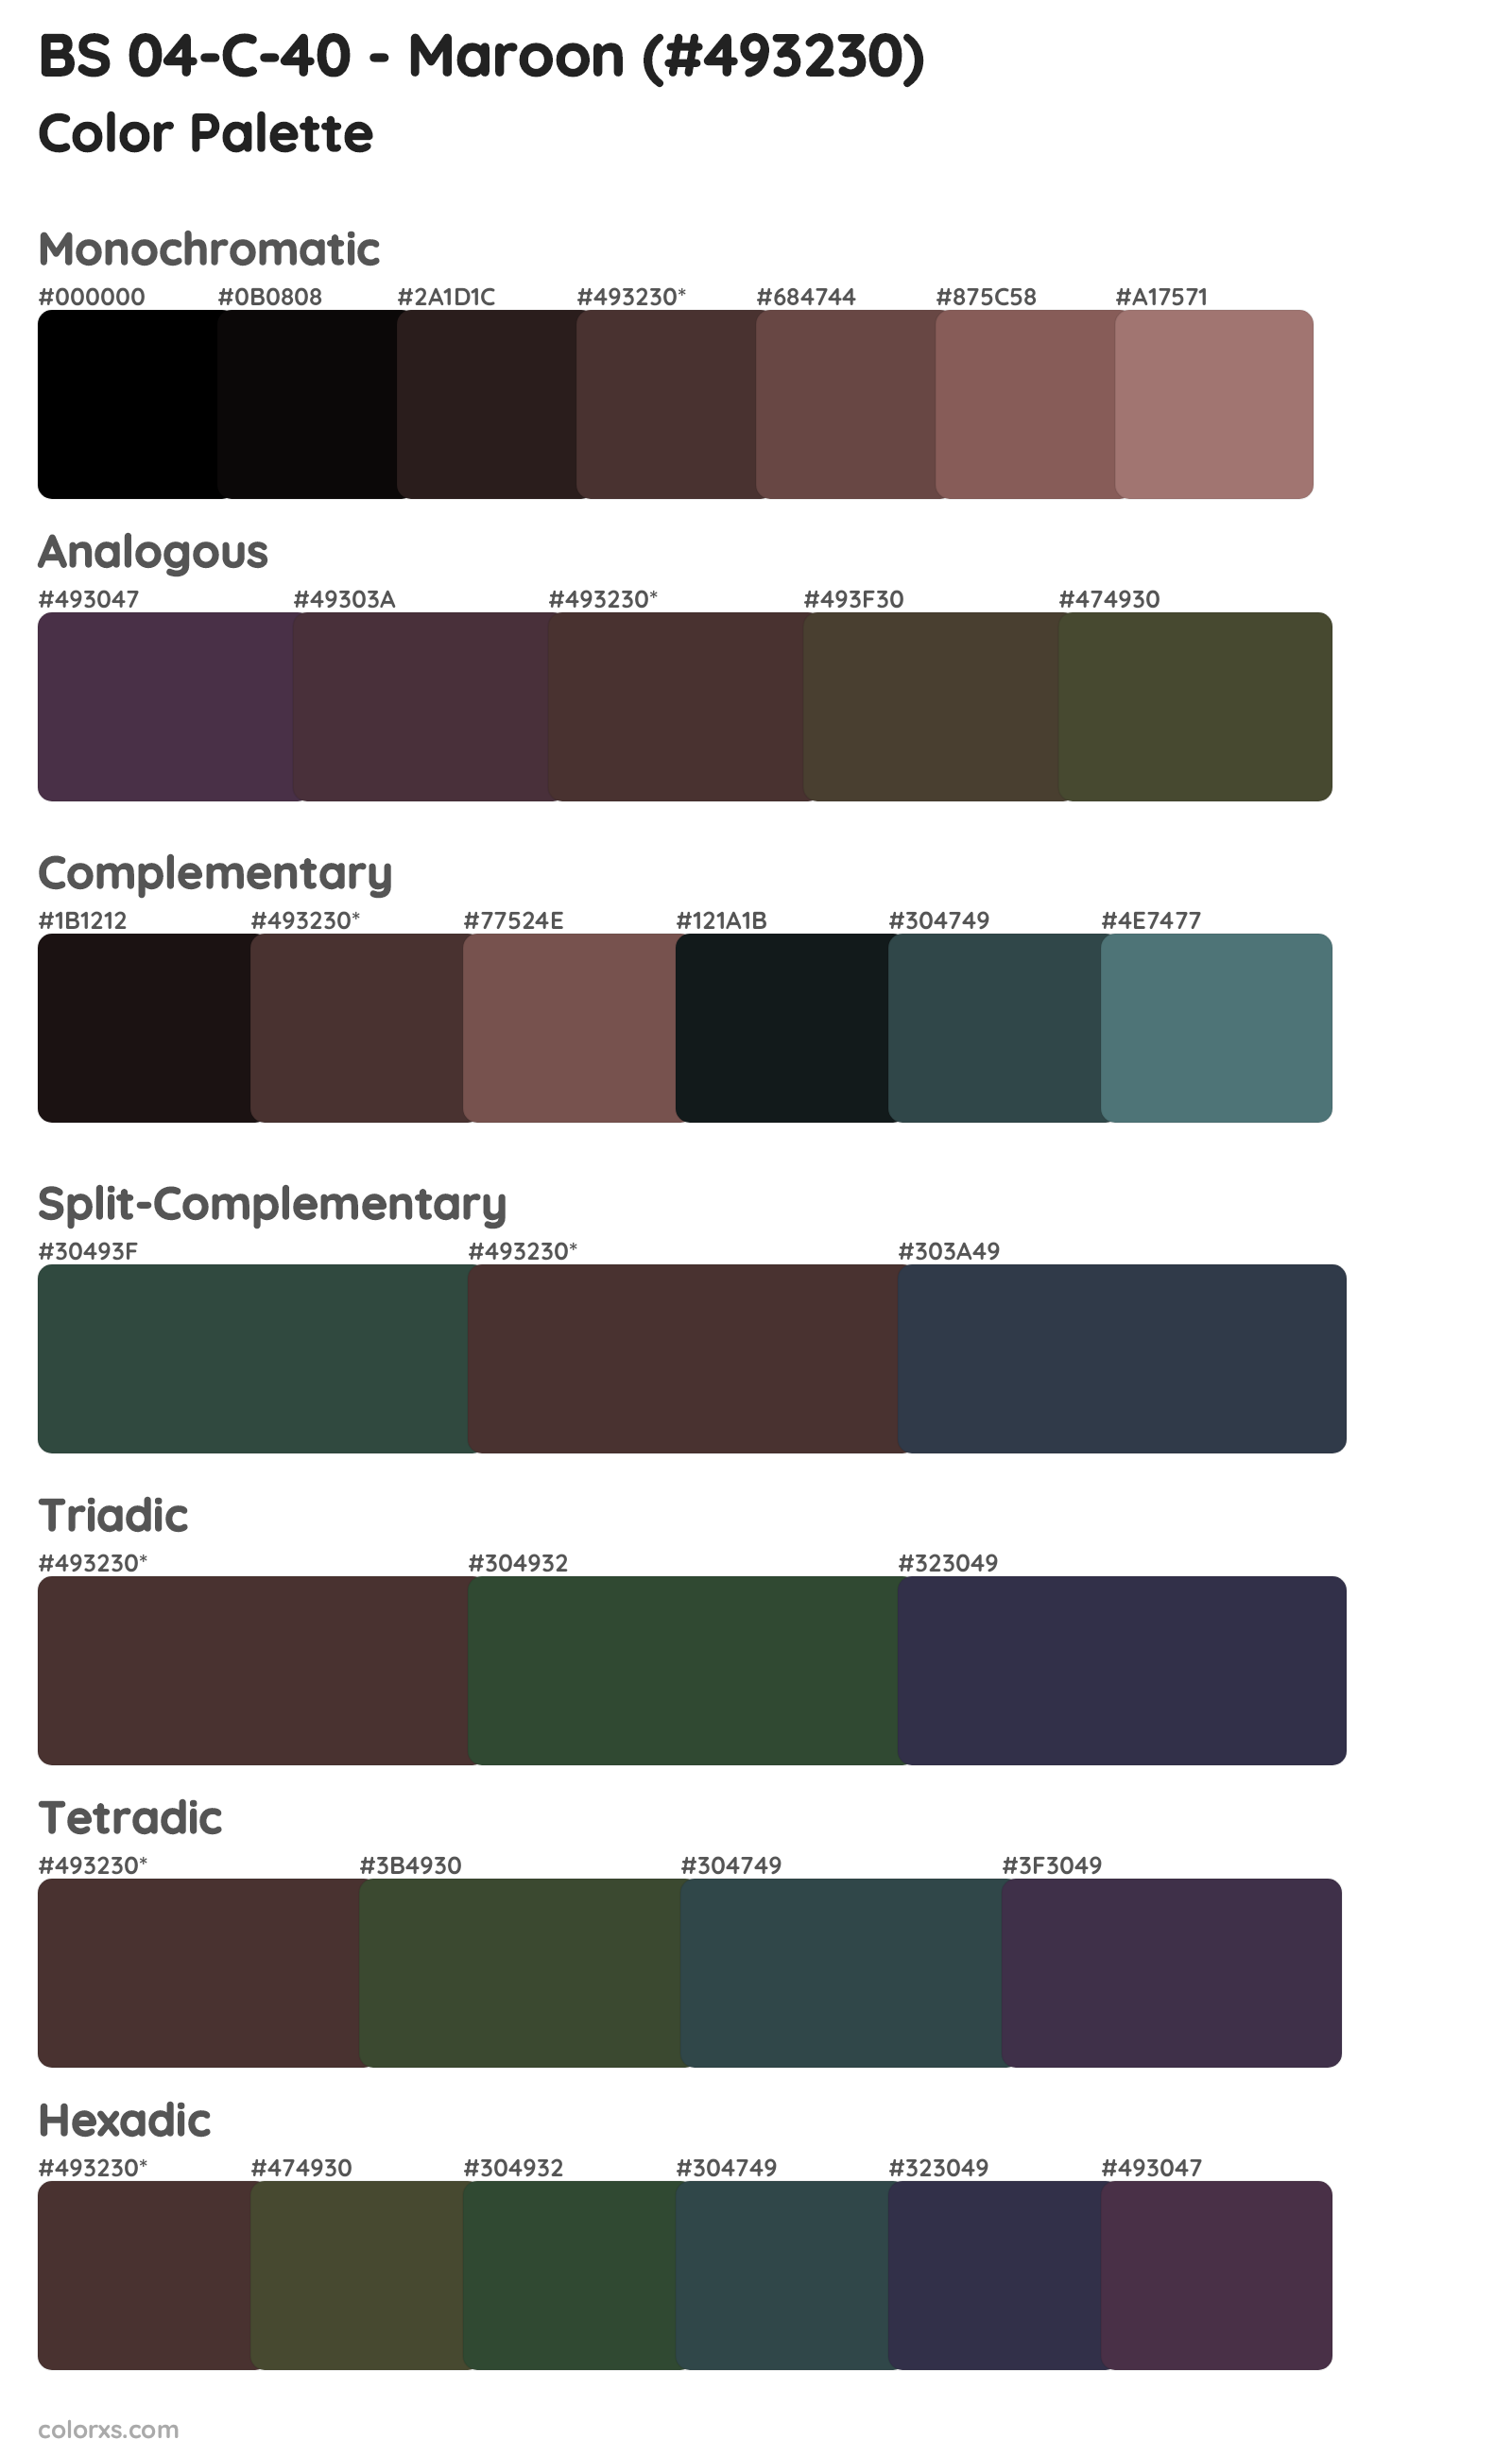 BS 04-C-40 - Maroon Color Scheme Palettes